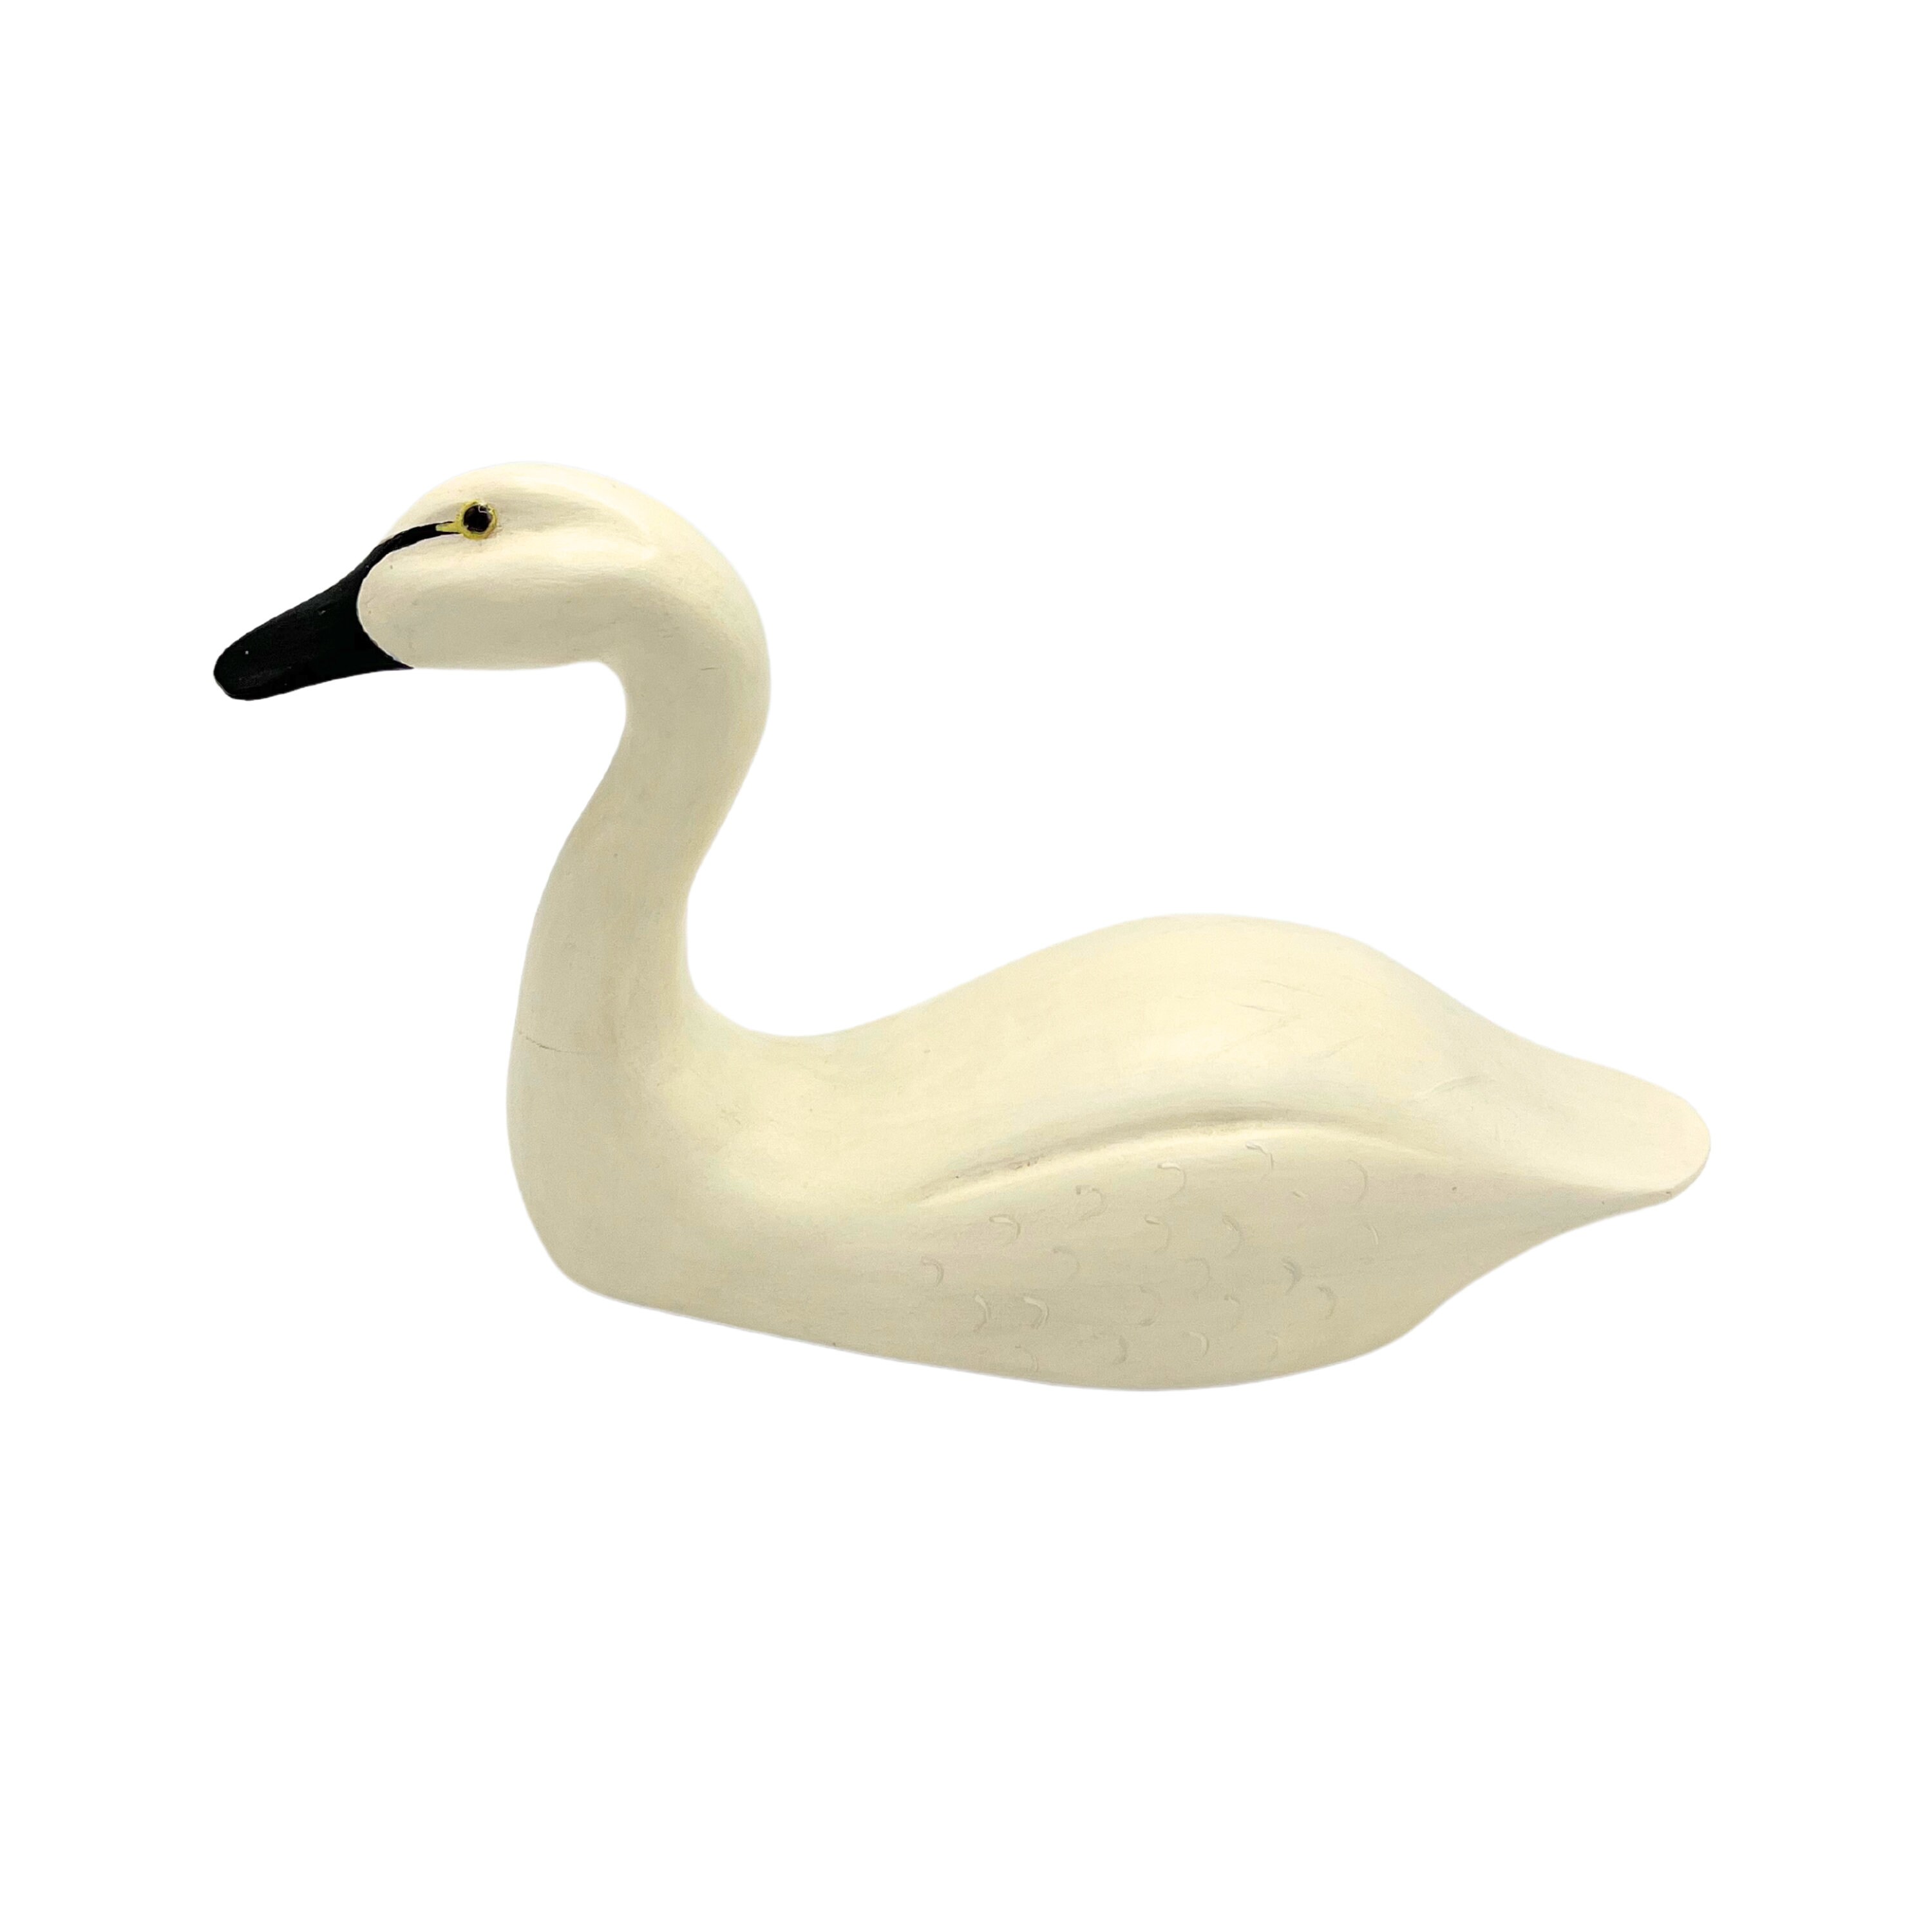 Antique Swan Decoy -  Canada